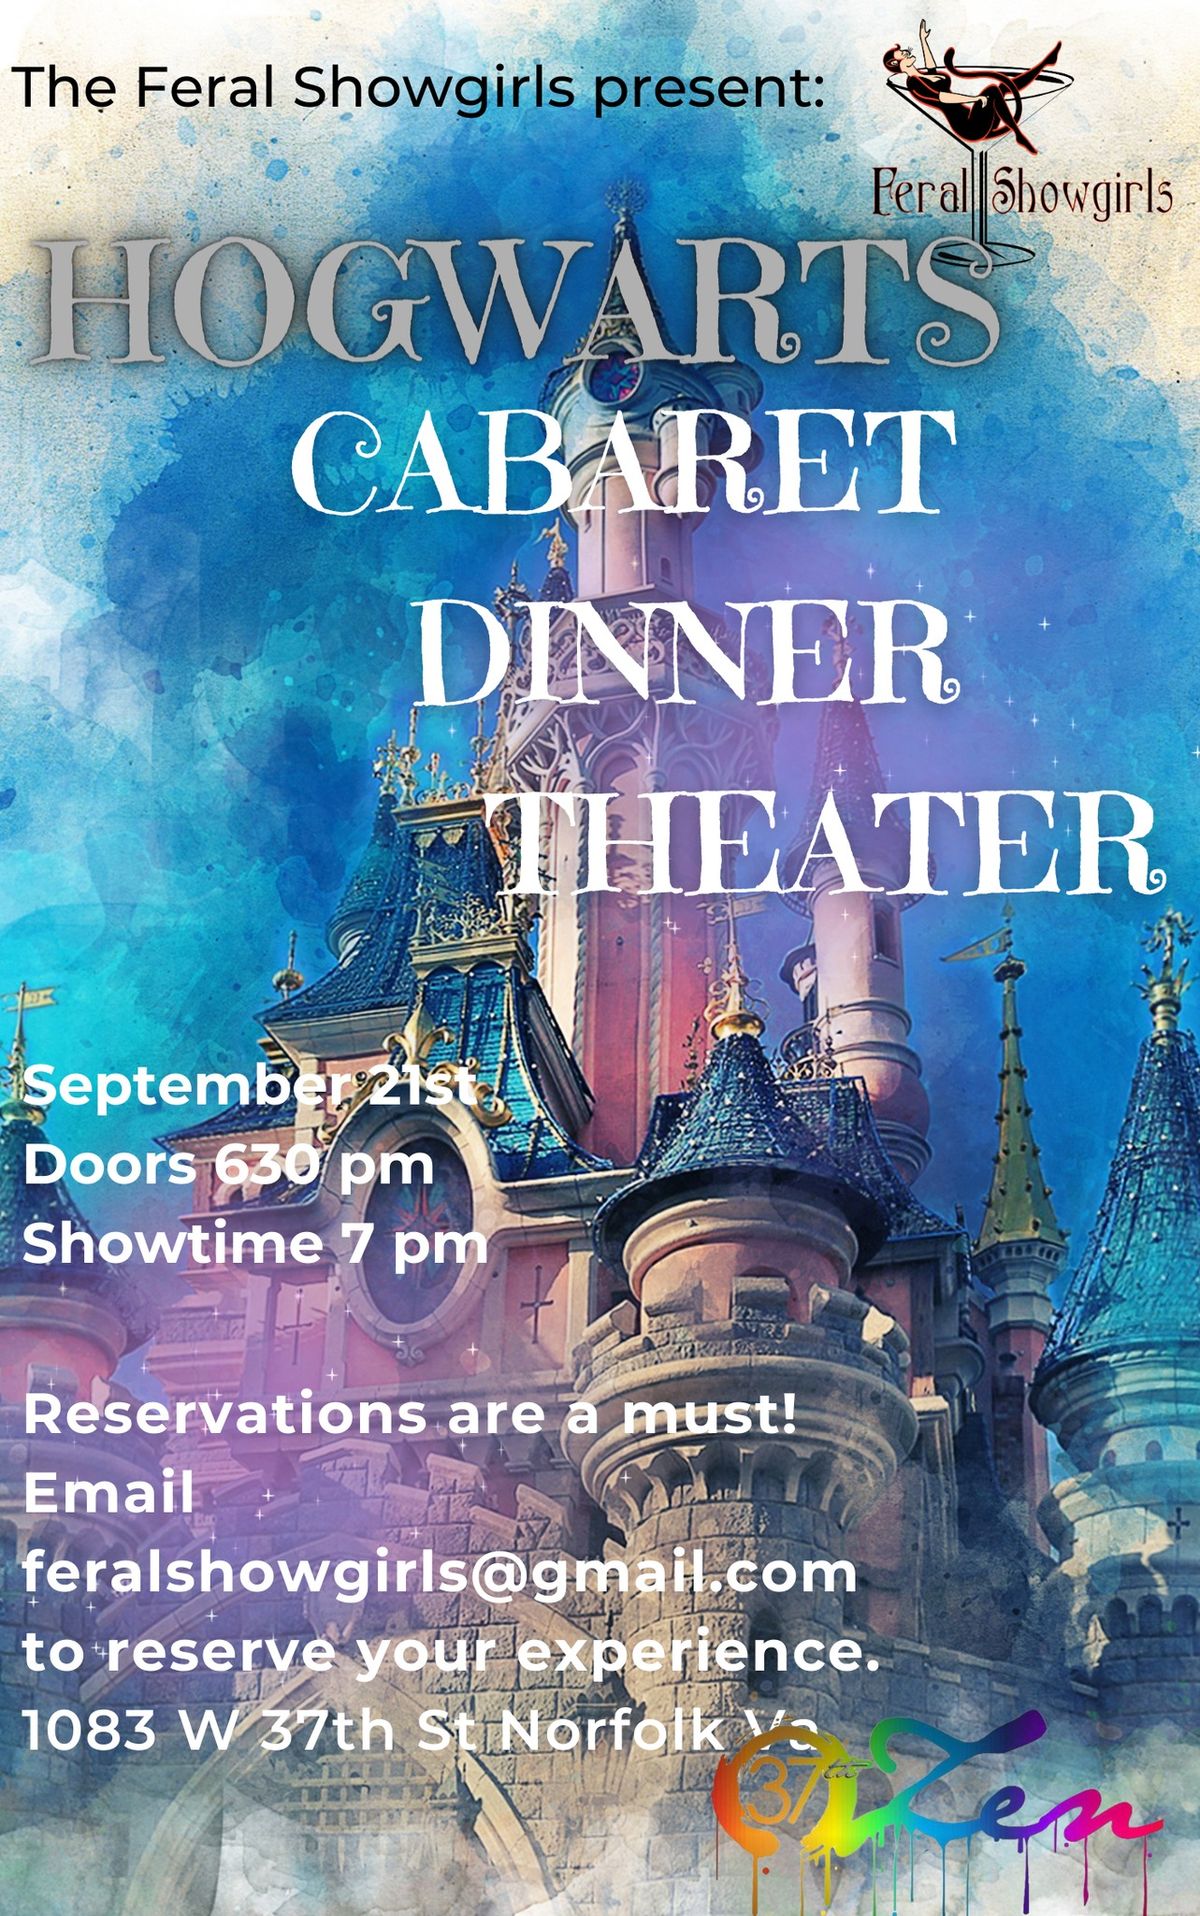 Cabaret Dinner Theater Hogwart's Castle